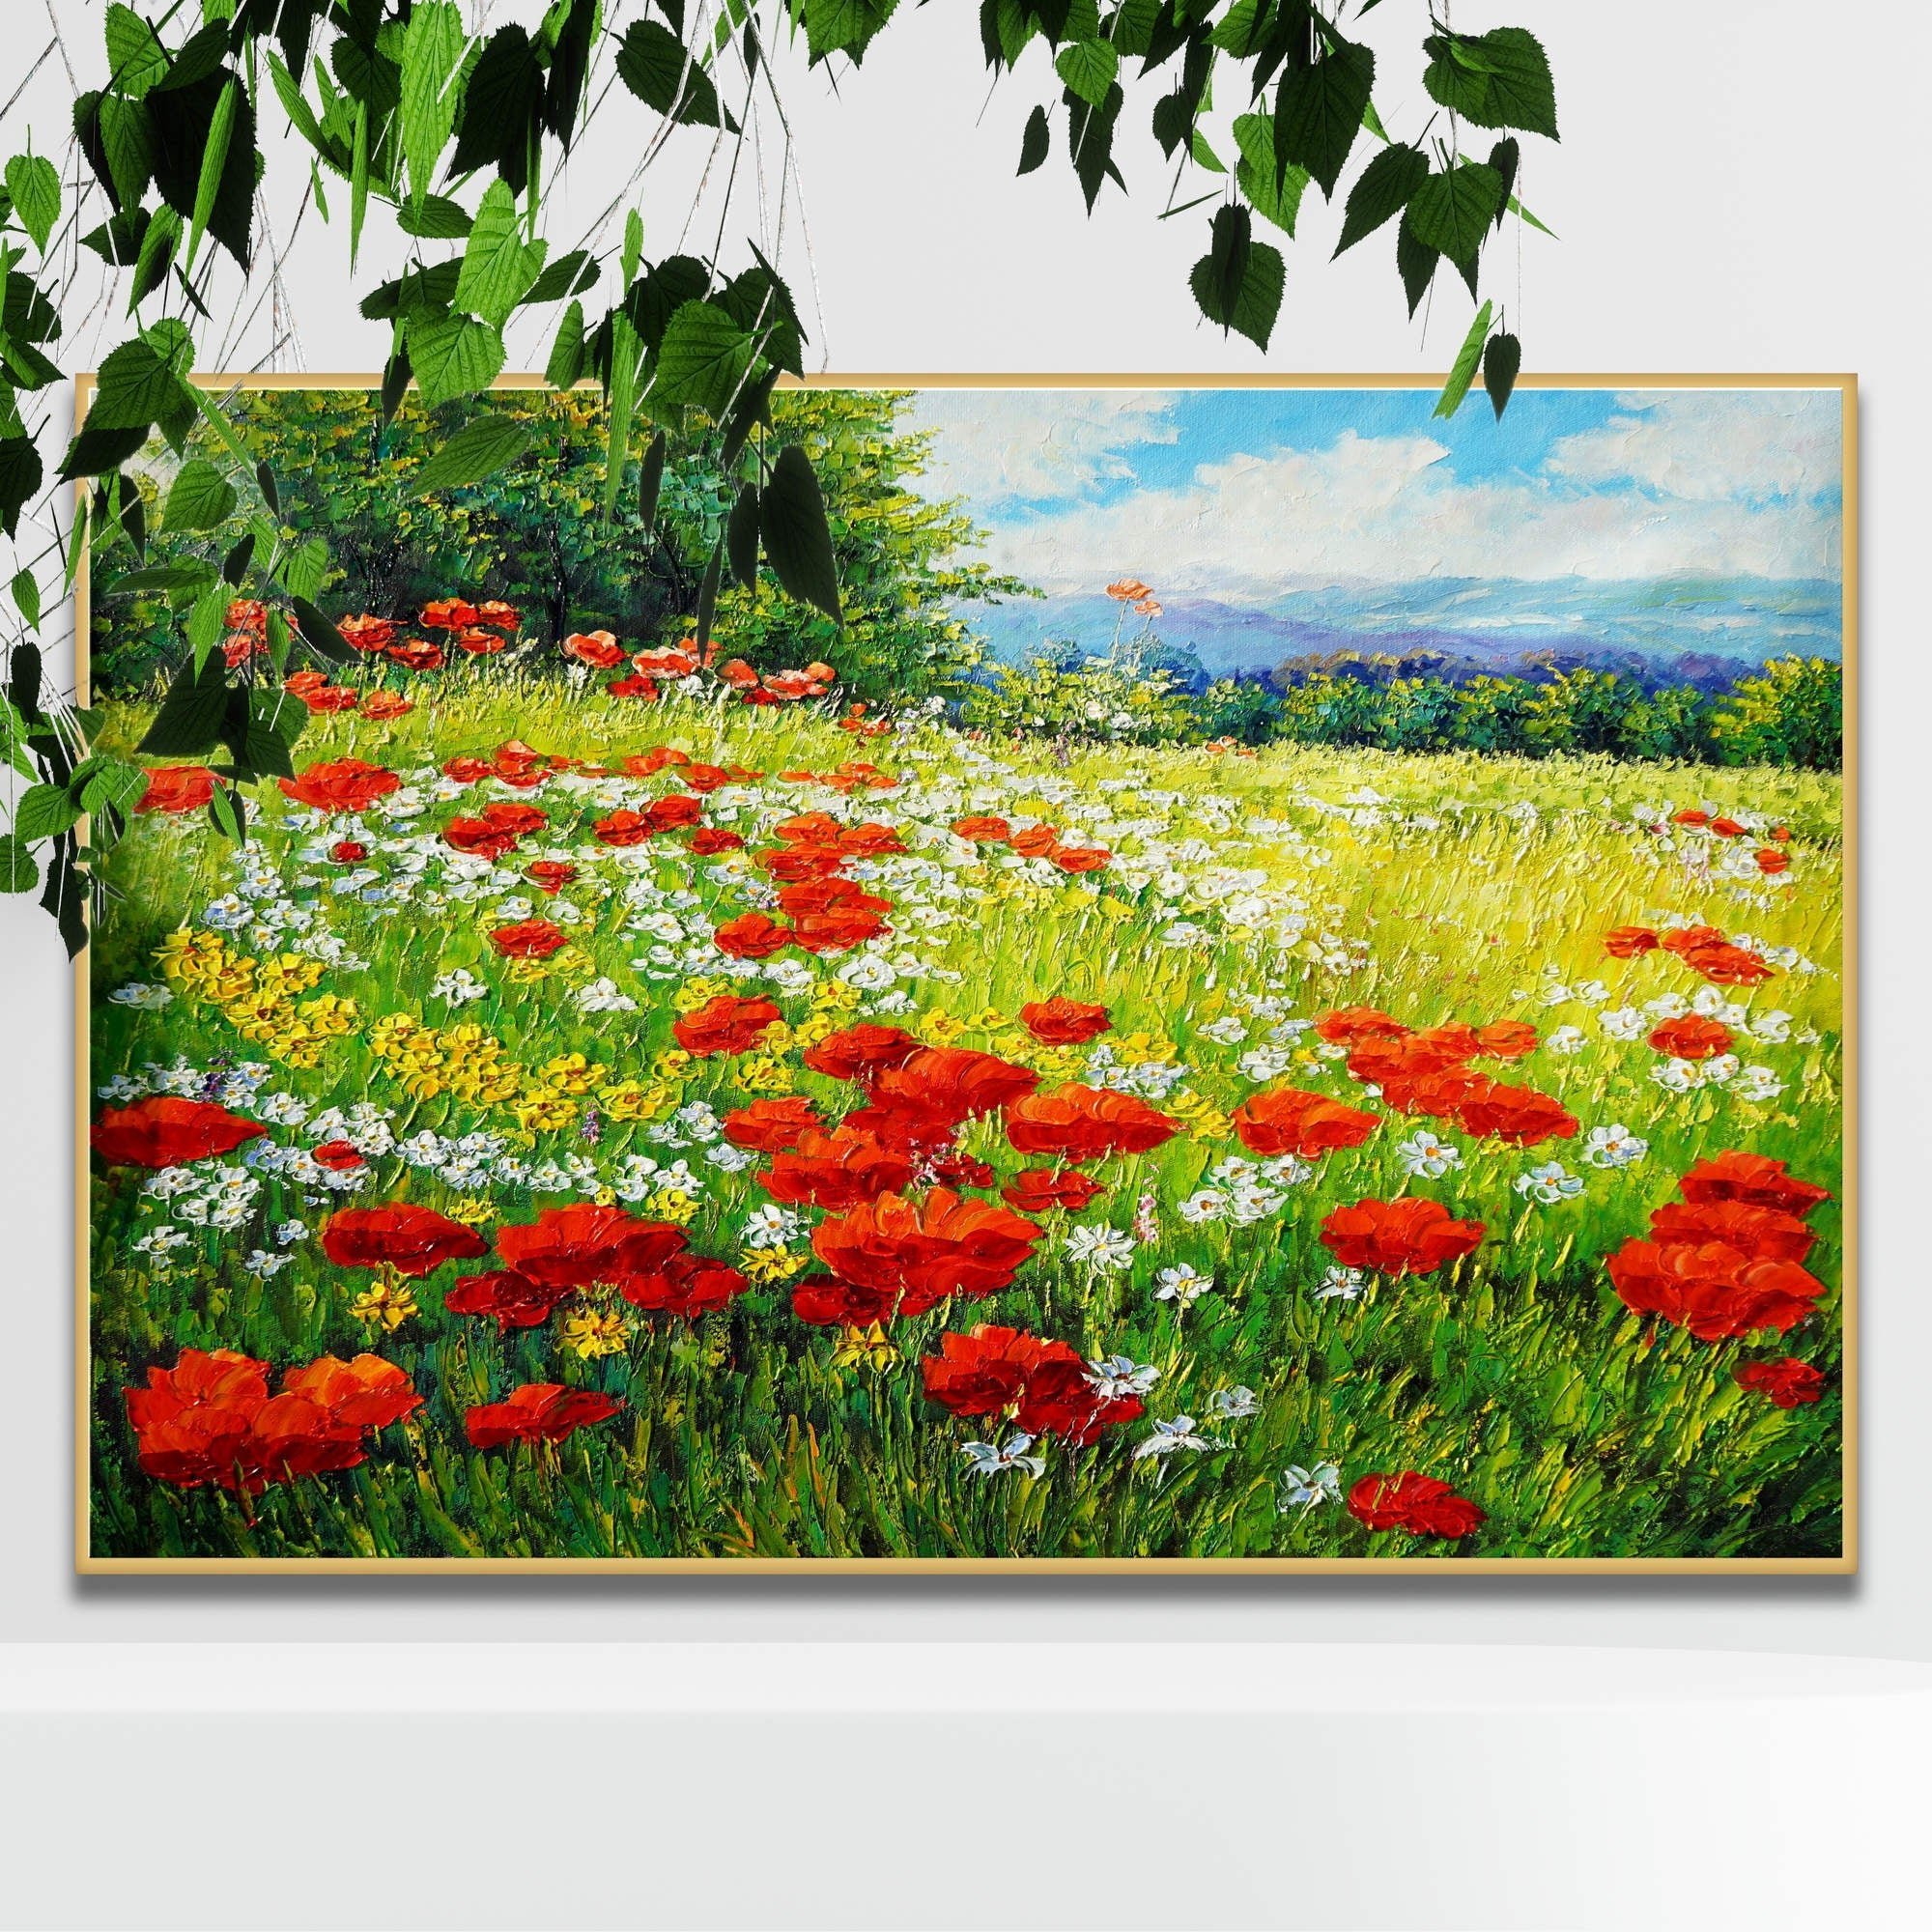 Dipinto di un campo fiorito colorato con cielo leggermente nuvoloso.